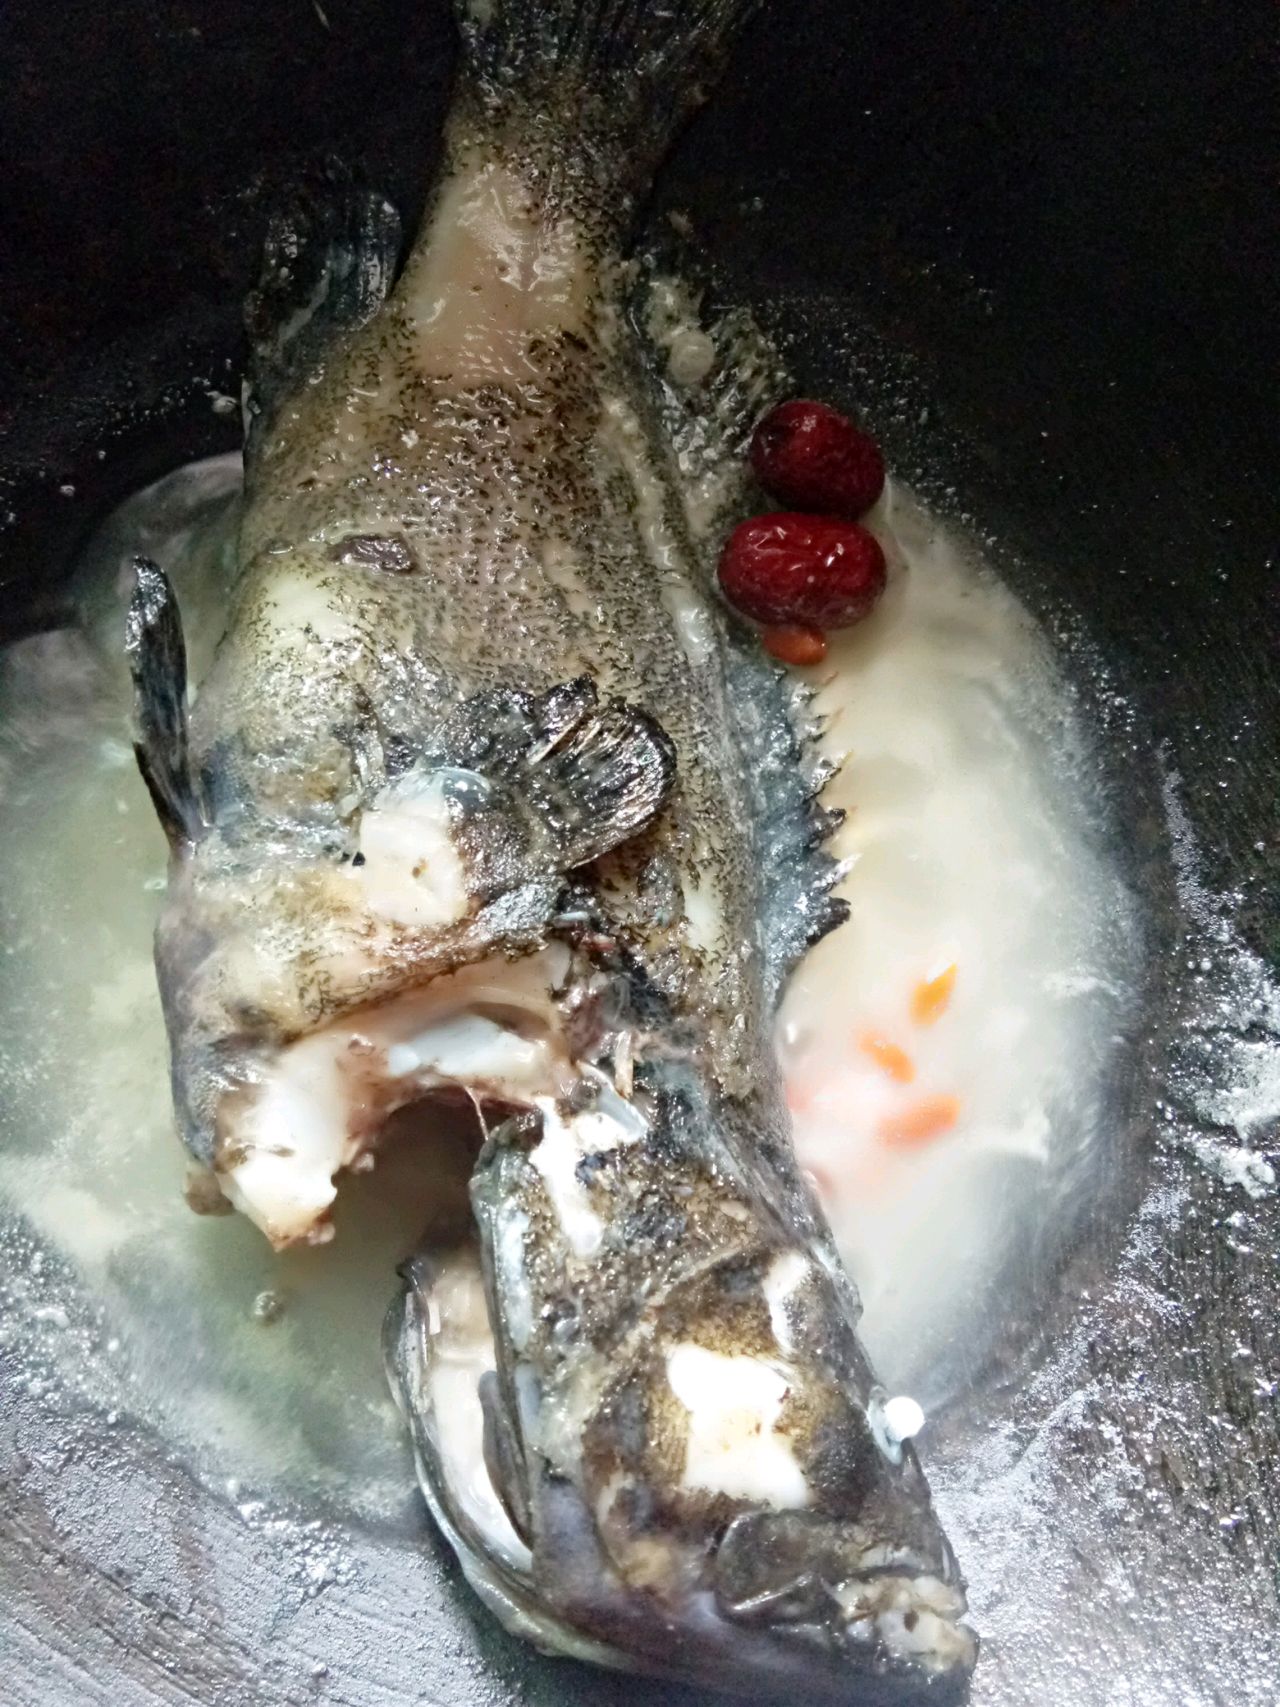 石斑鱼汤